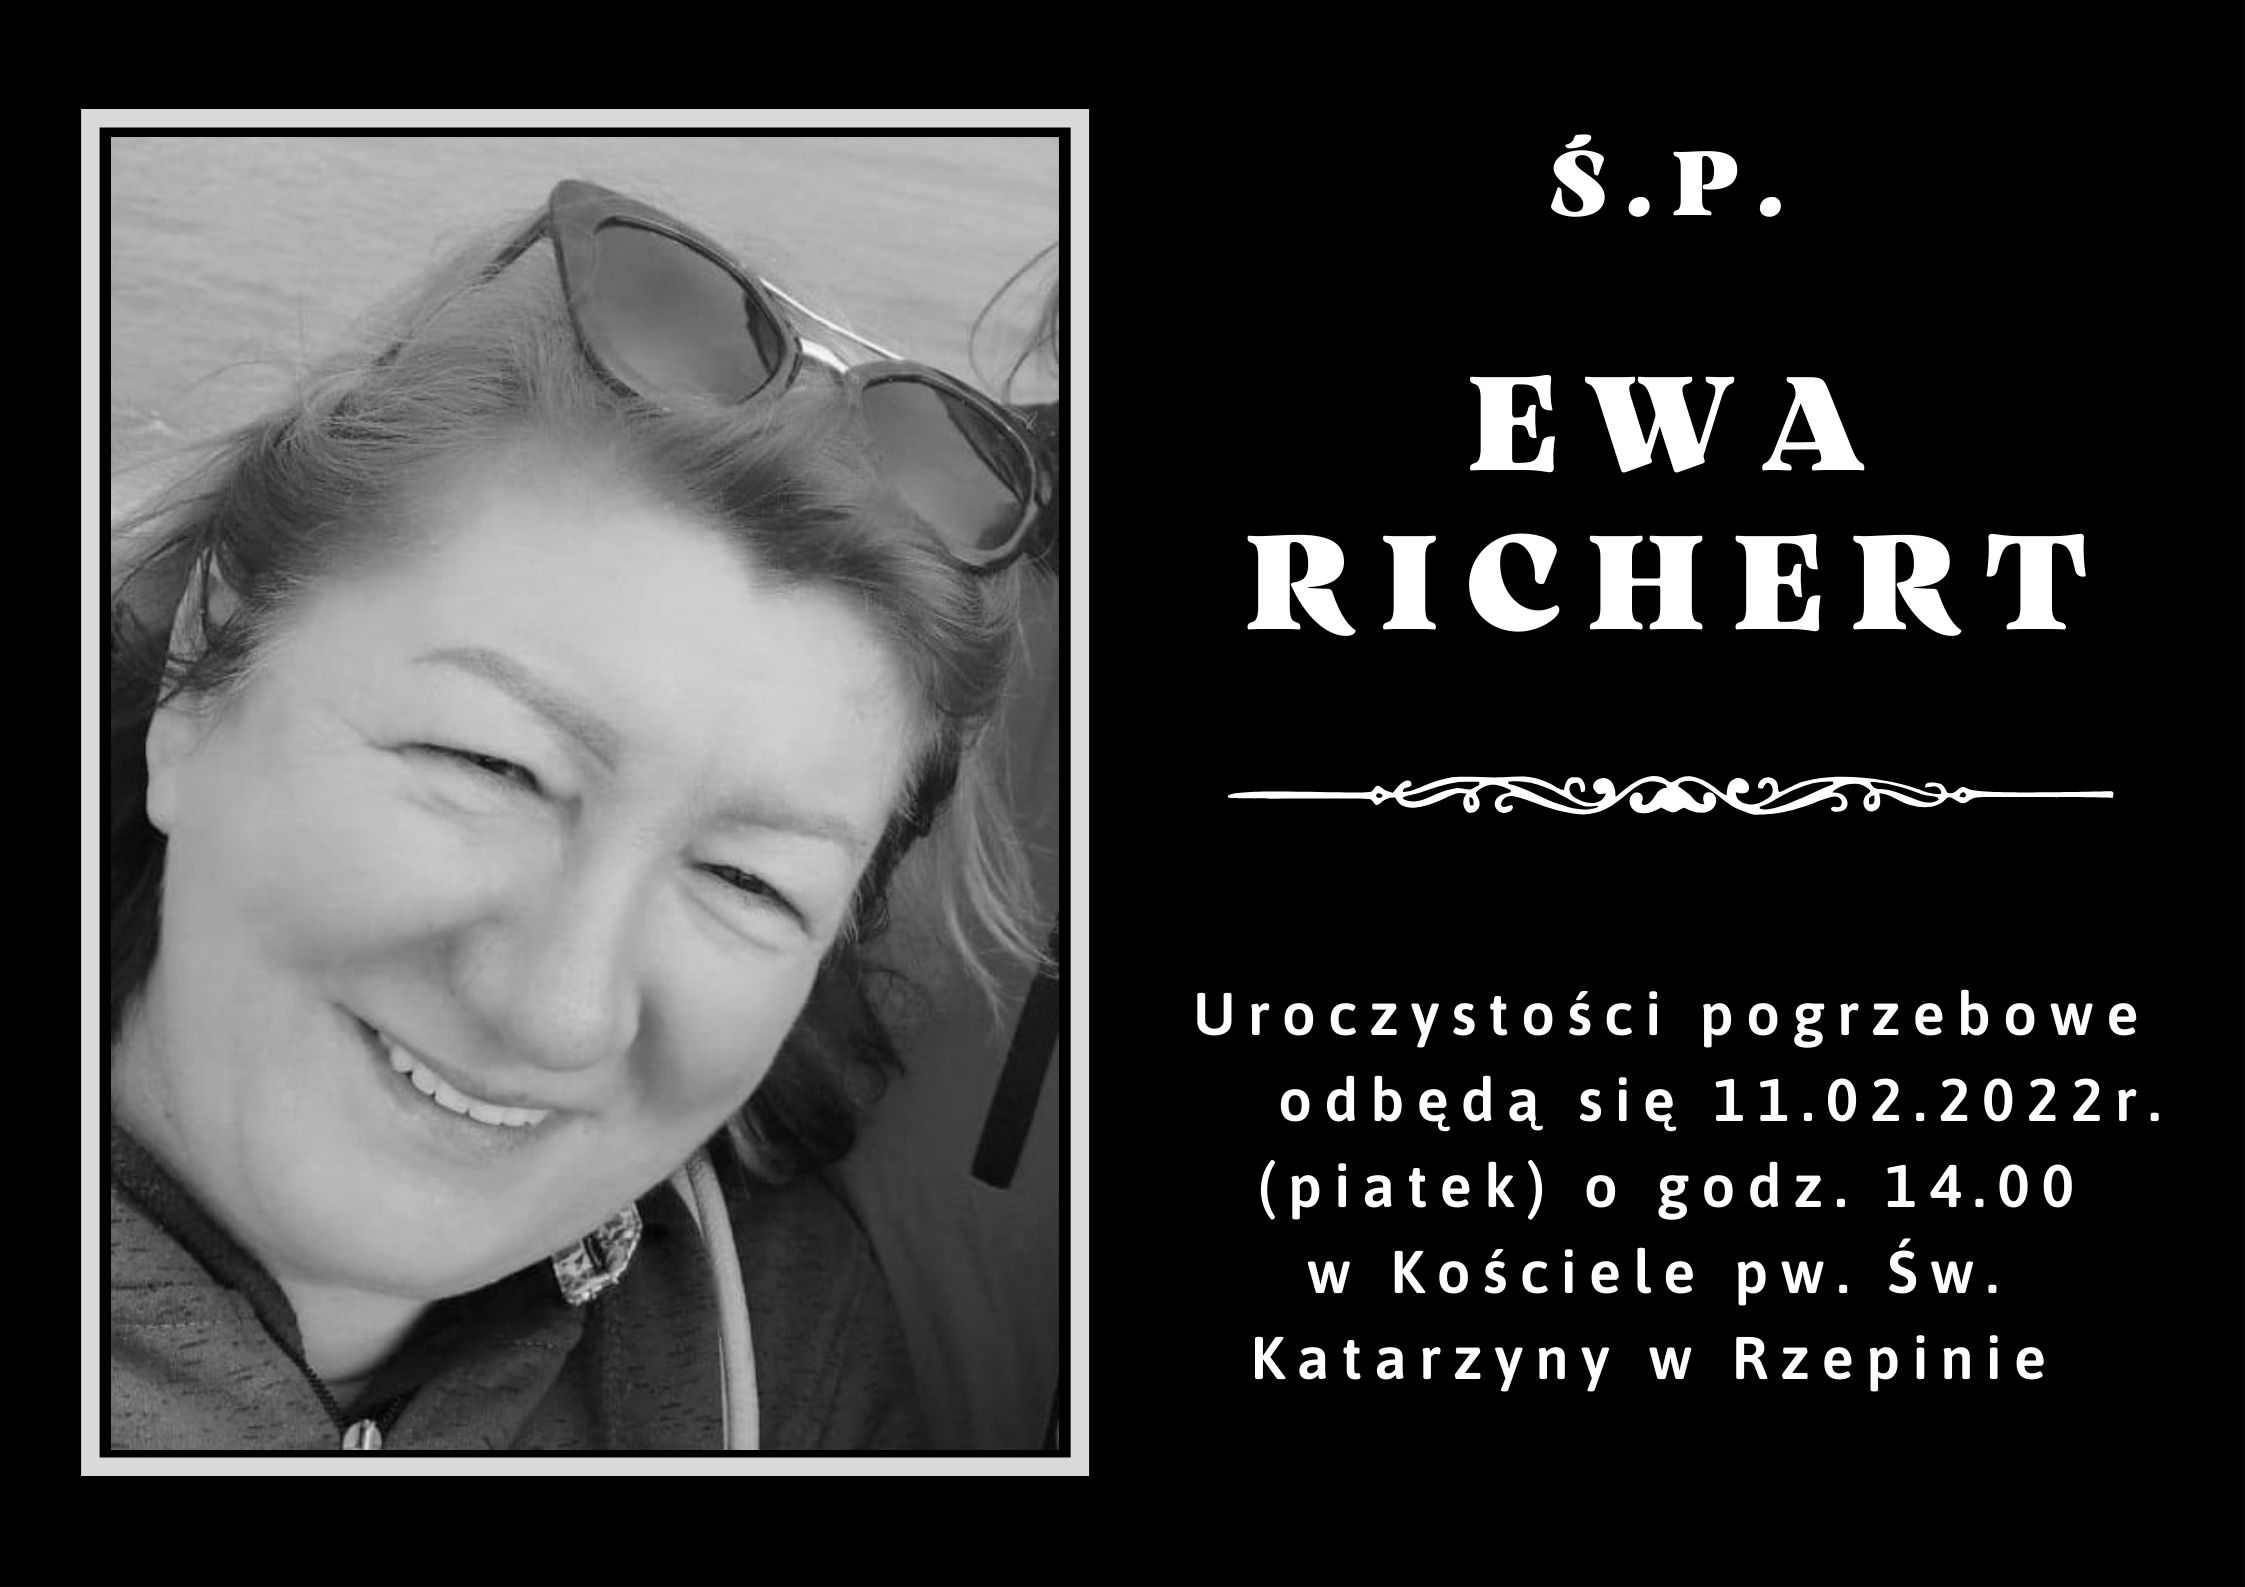 Pożegnanie p. Ewy Richert. pogrzeb odbędzie sie 11 lutego 2022 w kosciele pw. św. Katarzyny w Rzepinie.